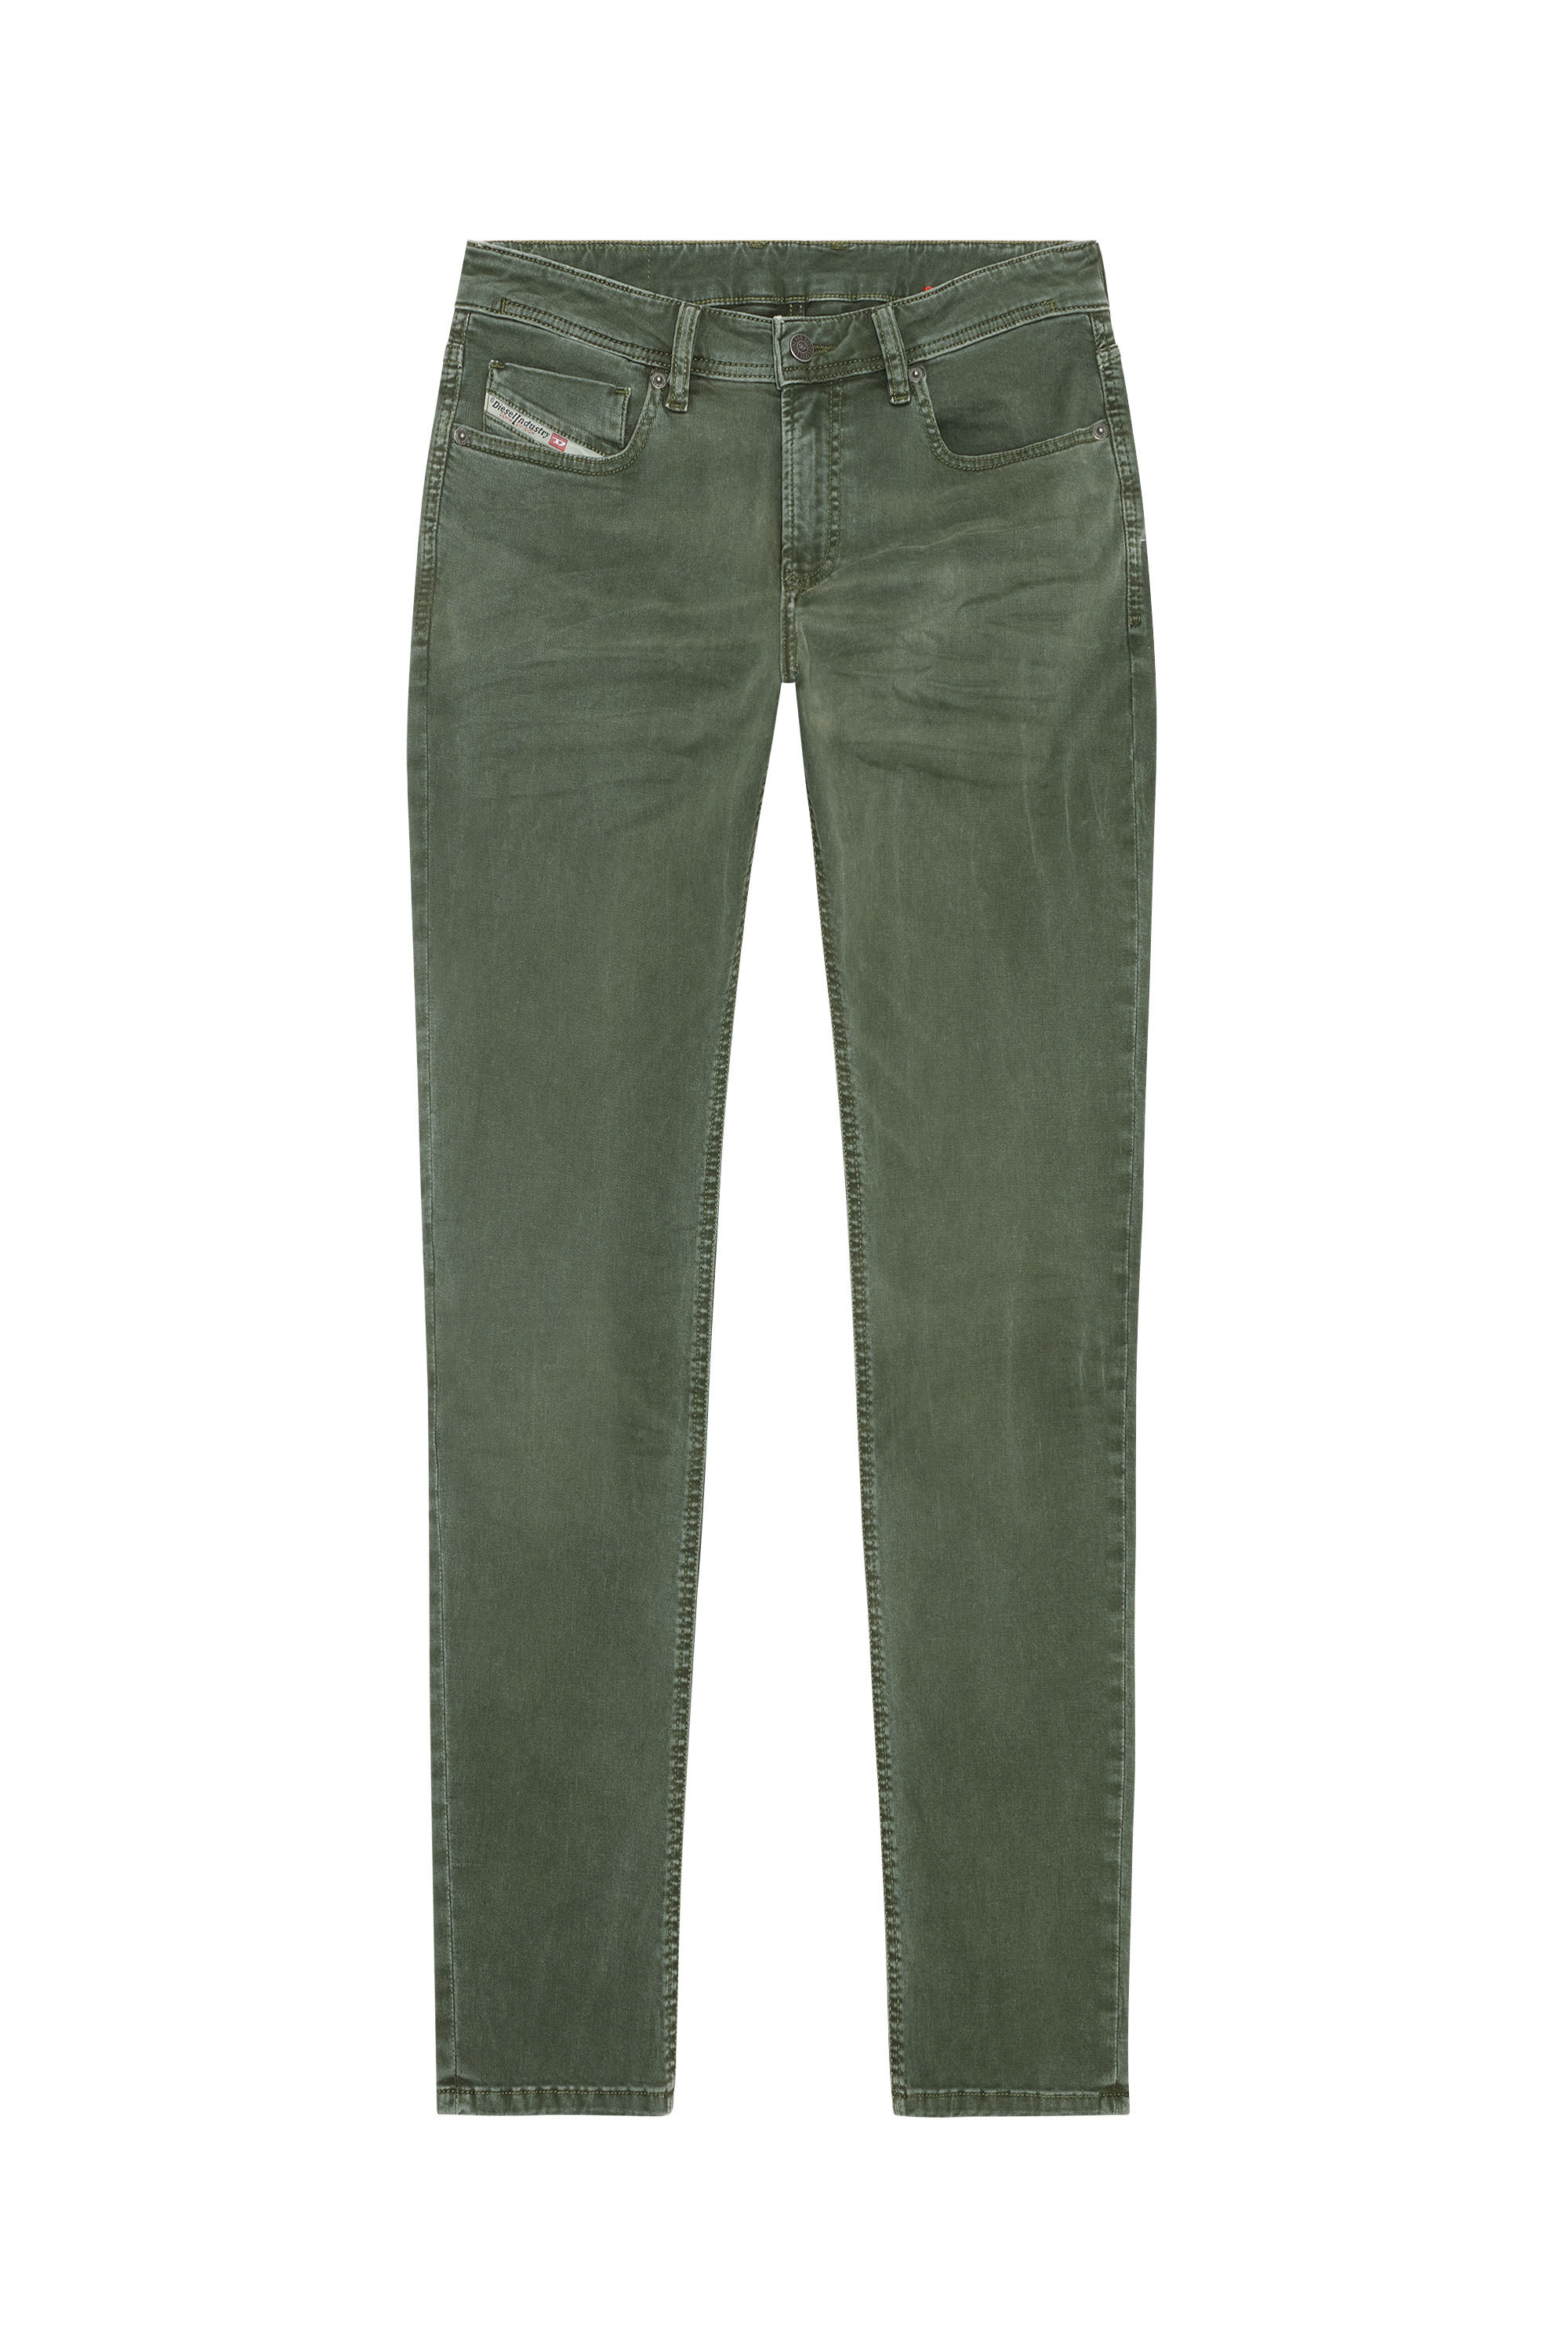 Diesel - Skinny Jeans 1979 Sleenker 0ENAK, 5FX - Image 2